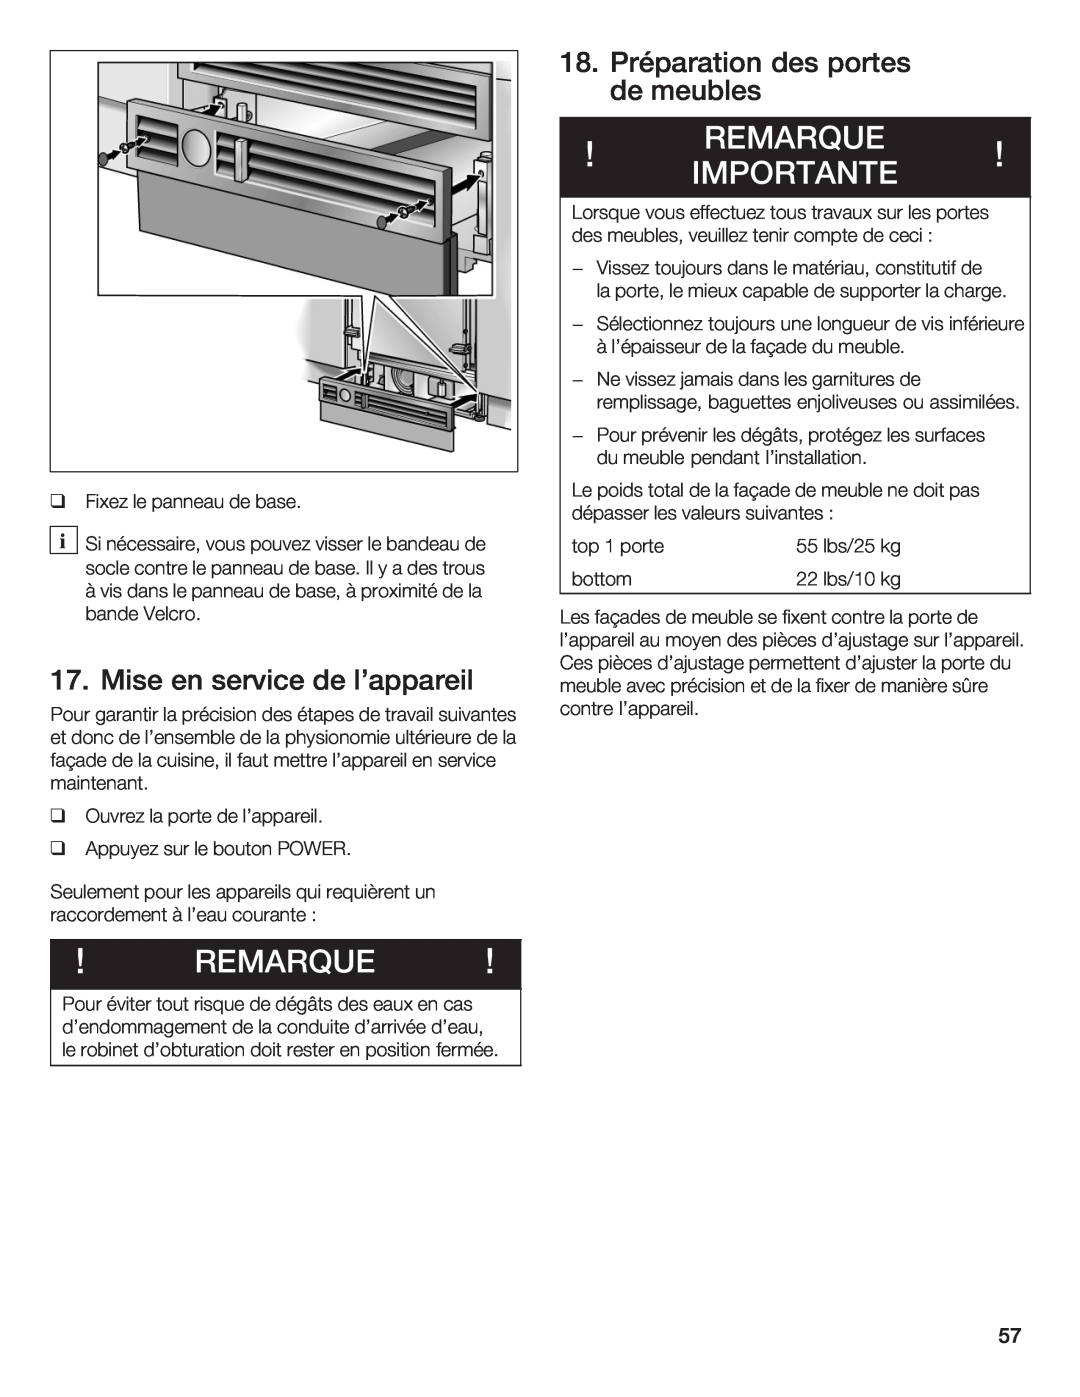 Thermador T36IB70NSP manual Importante, Remarque, 18. Préparation des portes de meubles, Mise, service, lappareil 